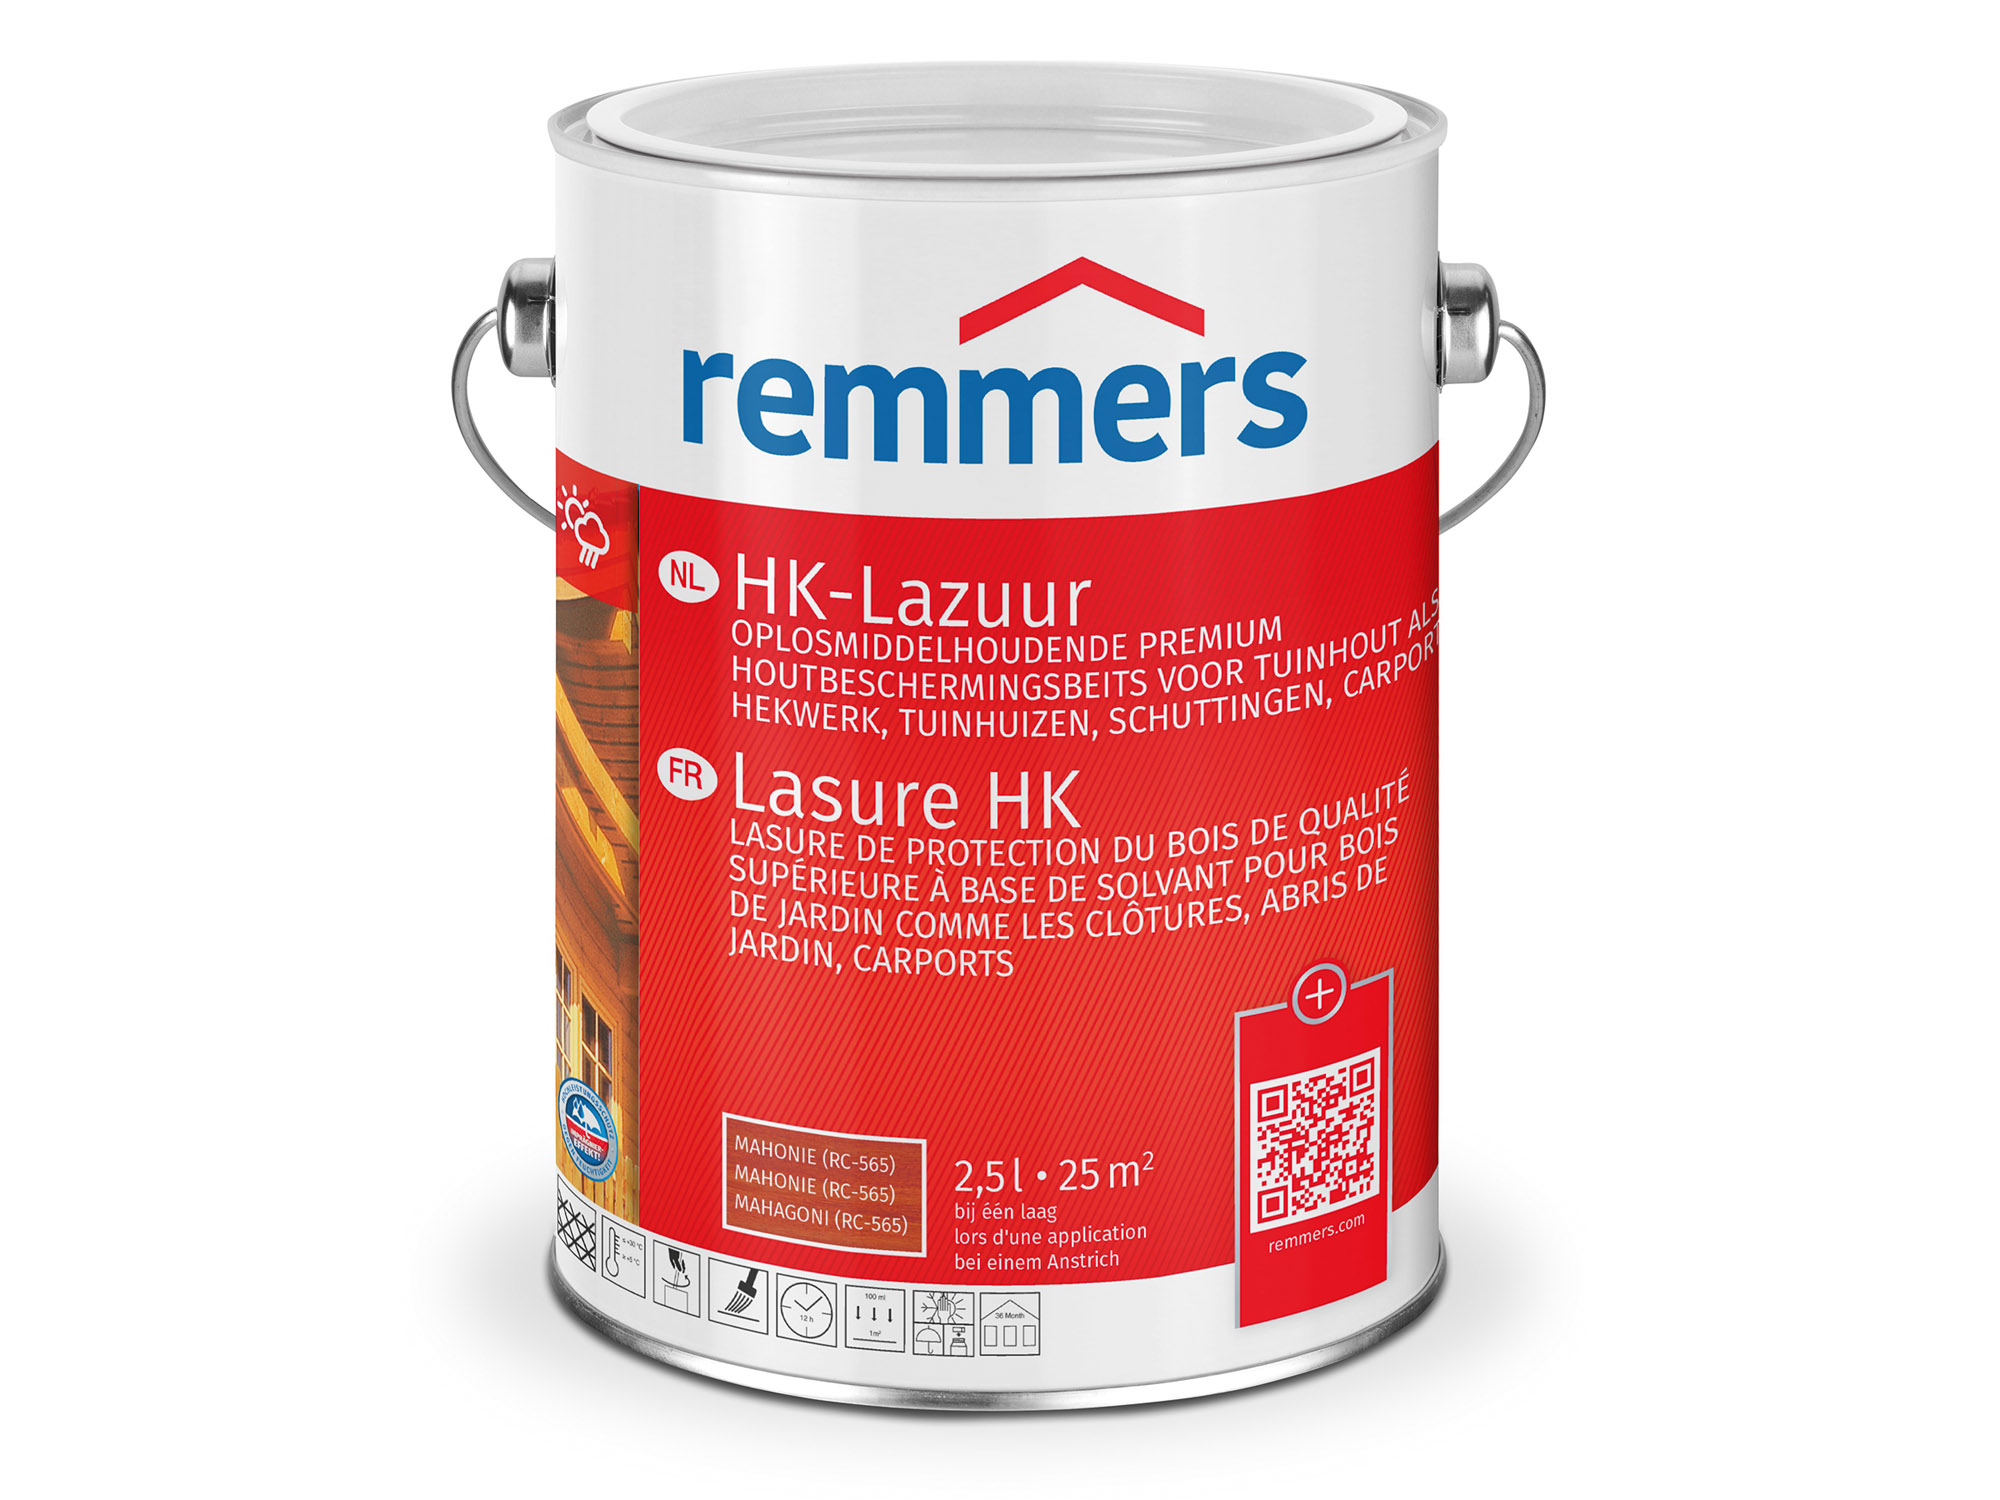 Remmers HK-Lazuur mahonie